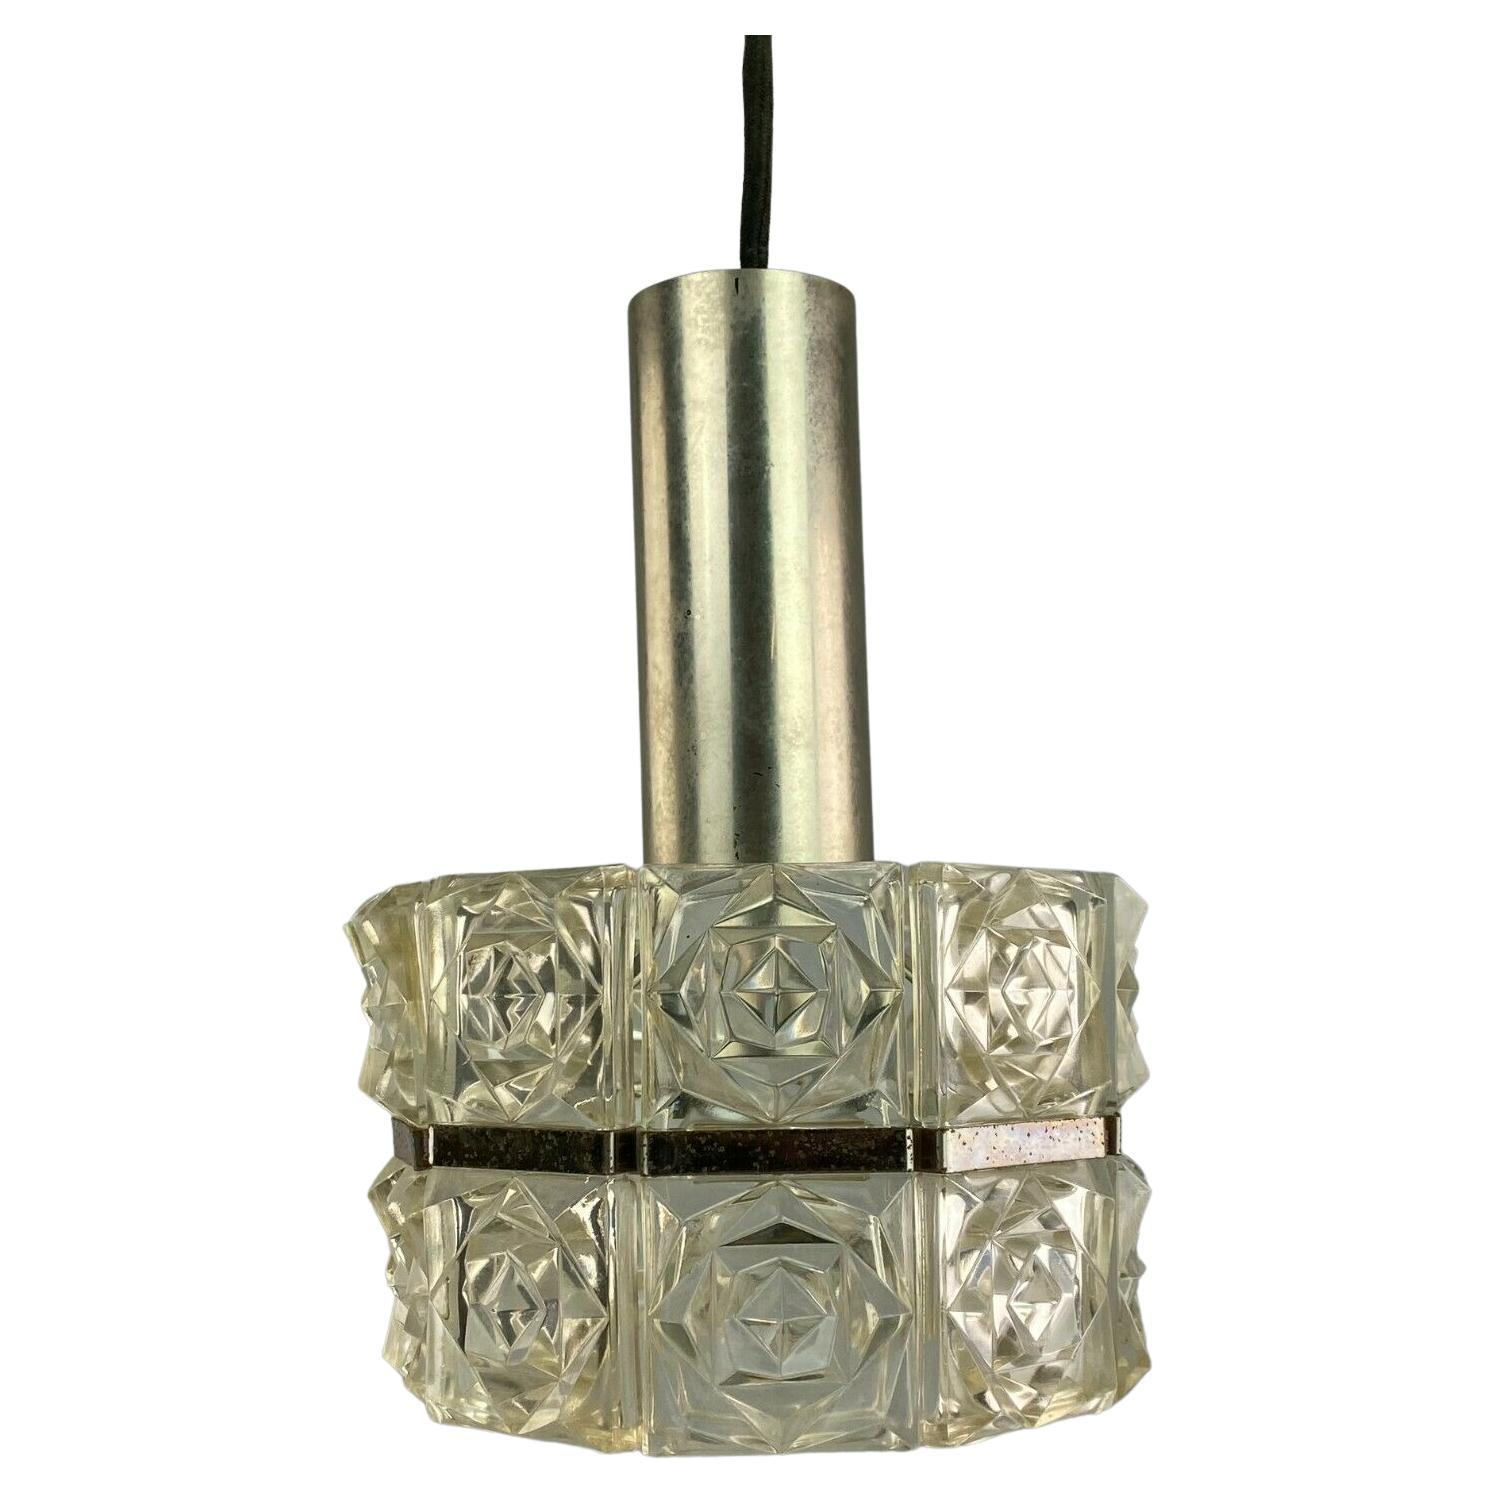 60s 70s Ceiling Lamp Glass Lamp Light Sölken Leuchten Space Age 60s 70s For Sale